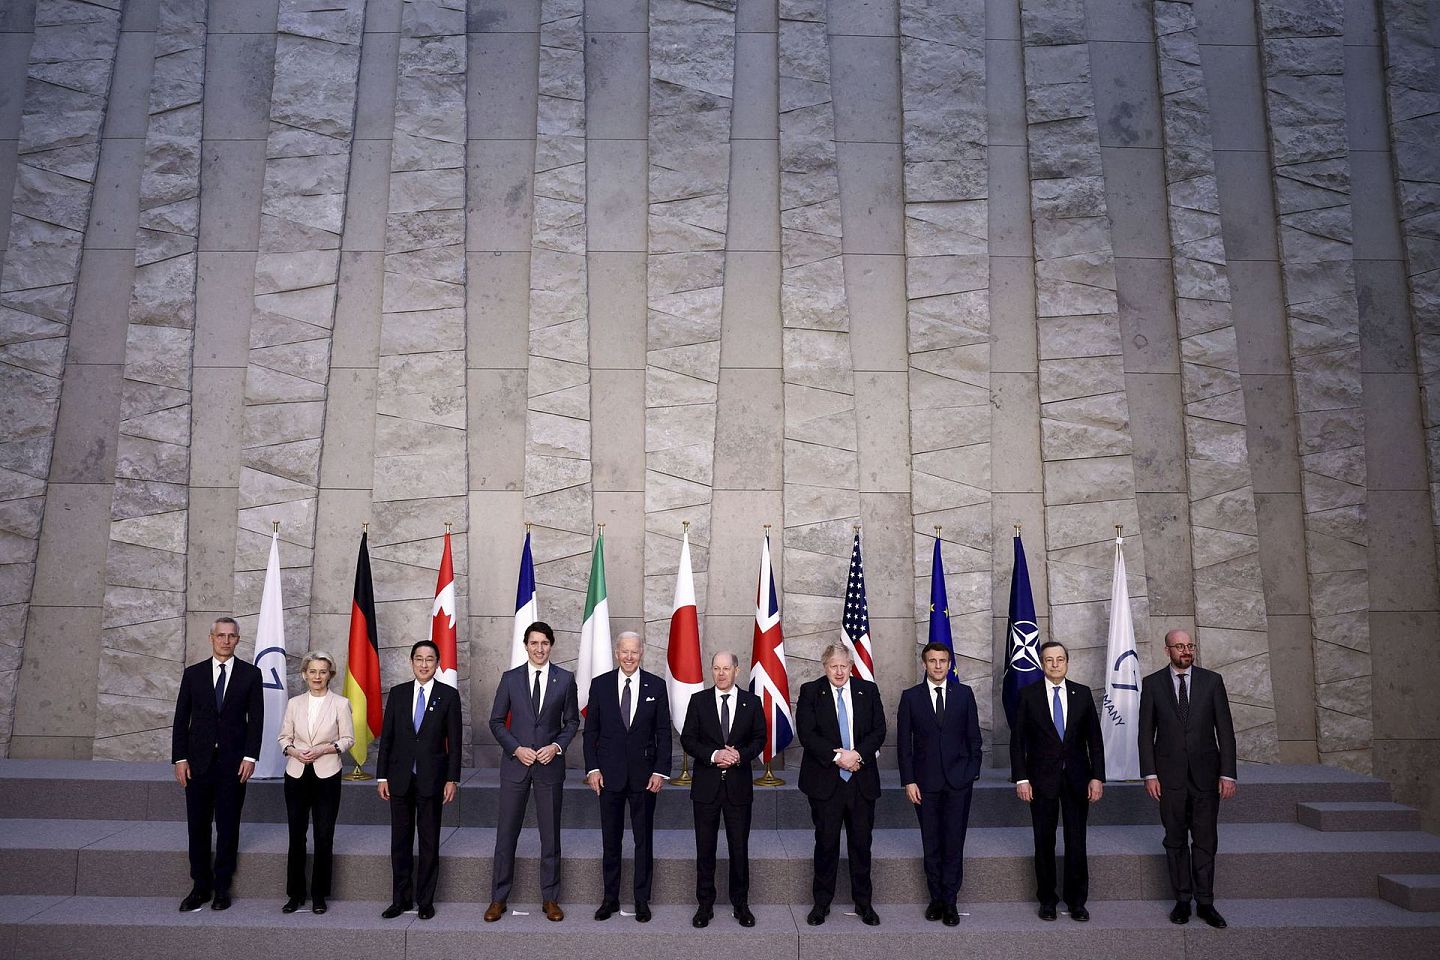 2022 年 3 月 24 日，在比利时布鲁塞尔举行的北约峰会上，意大利总理德拉吉和欧洲理事会主席米歇尔为 G7 领导人合影留念，讨论俄罗斯入侵乌克兰议题。左起北约秘书长斯托尔滕贝格、欧盟委员会主席冯德莱恩、日本首相岸田文雄、加拿大总理特鲁多、美国总统拜登、德国总理肖尔茨、英国首相强生、法国总统马克龙。（AP）